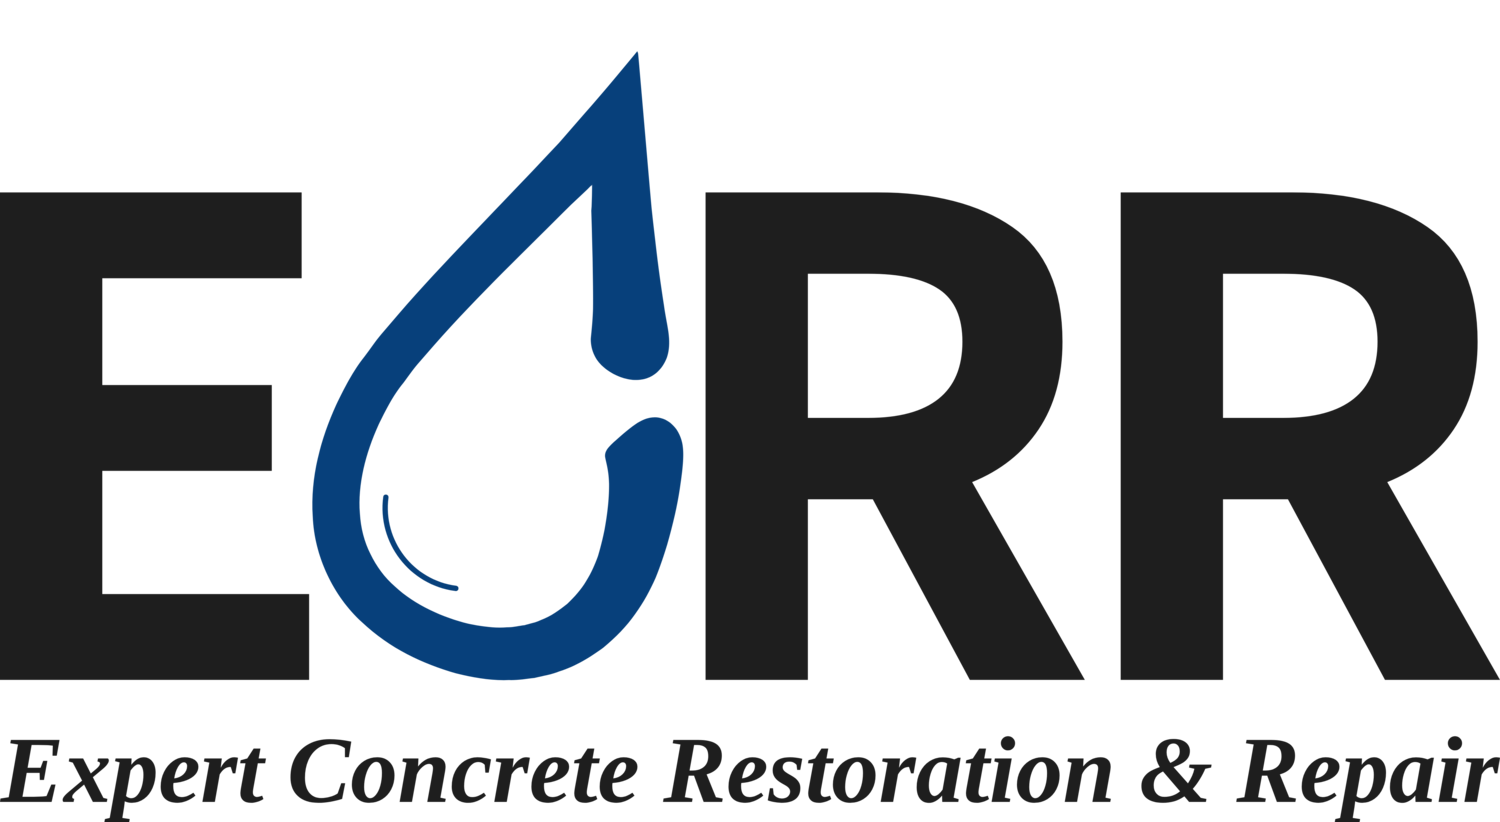 Expert Concrete Restoration & Repair